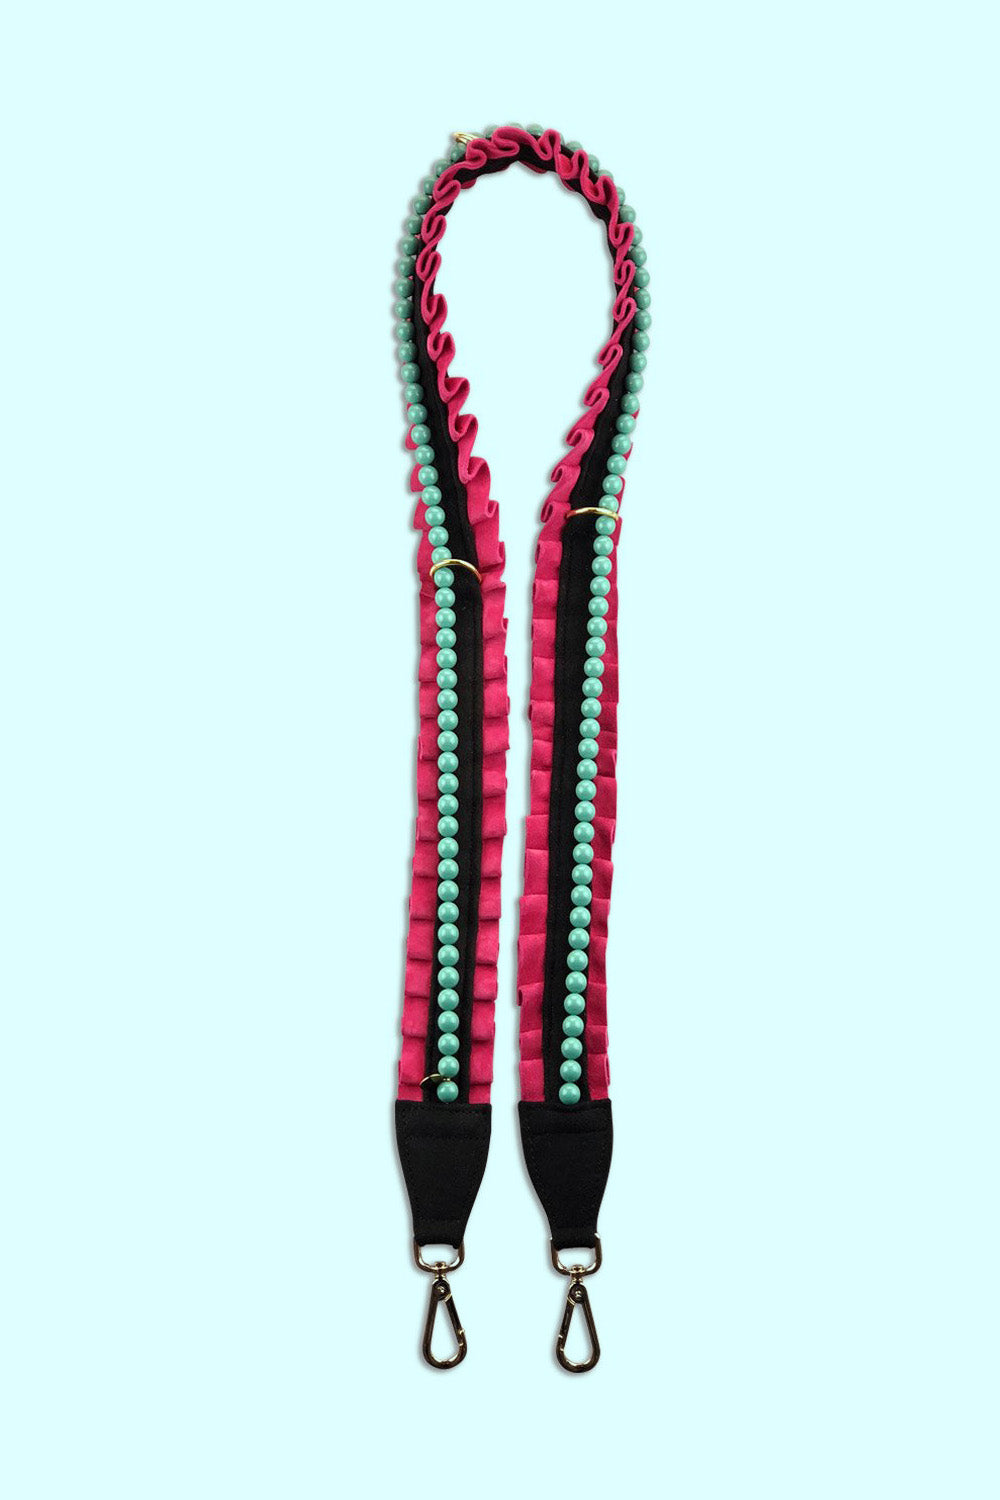 Produktbild Taschenträger mit stylischen Rüschen und edlen Perlen von FederRock